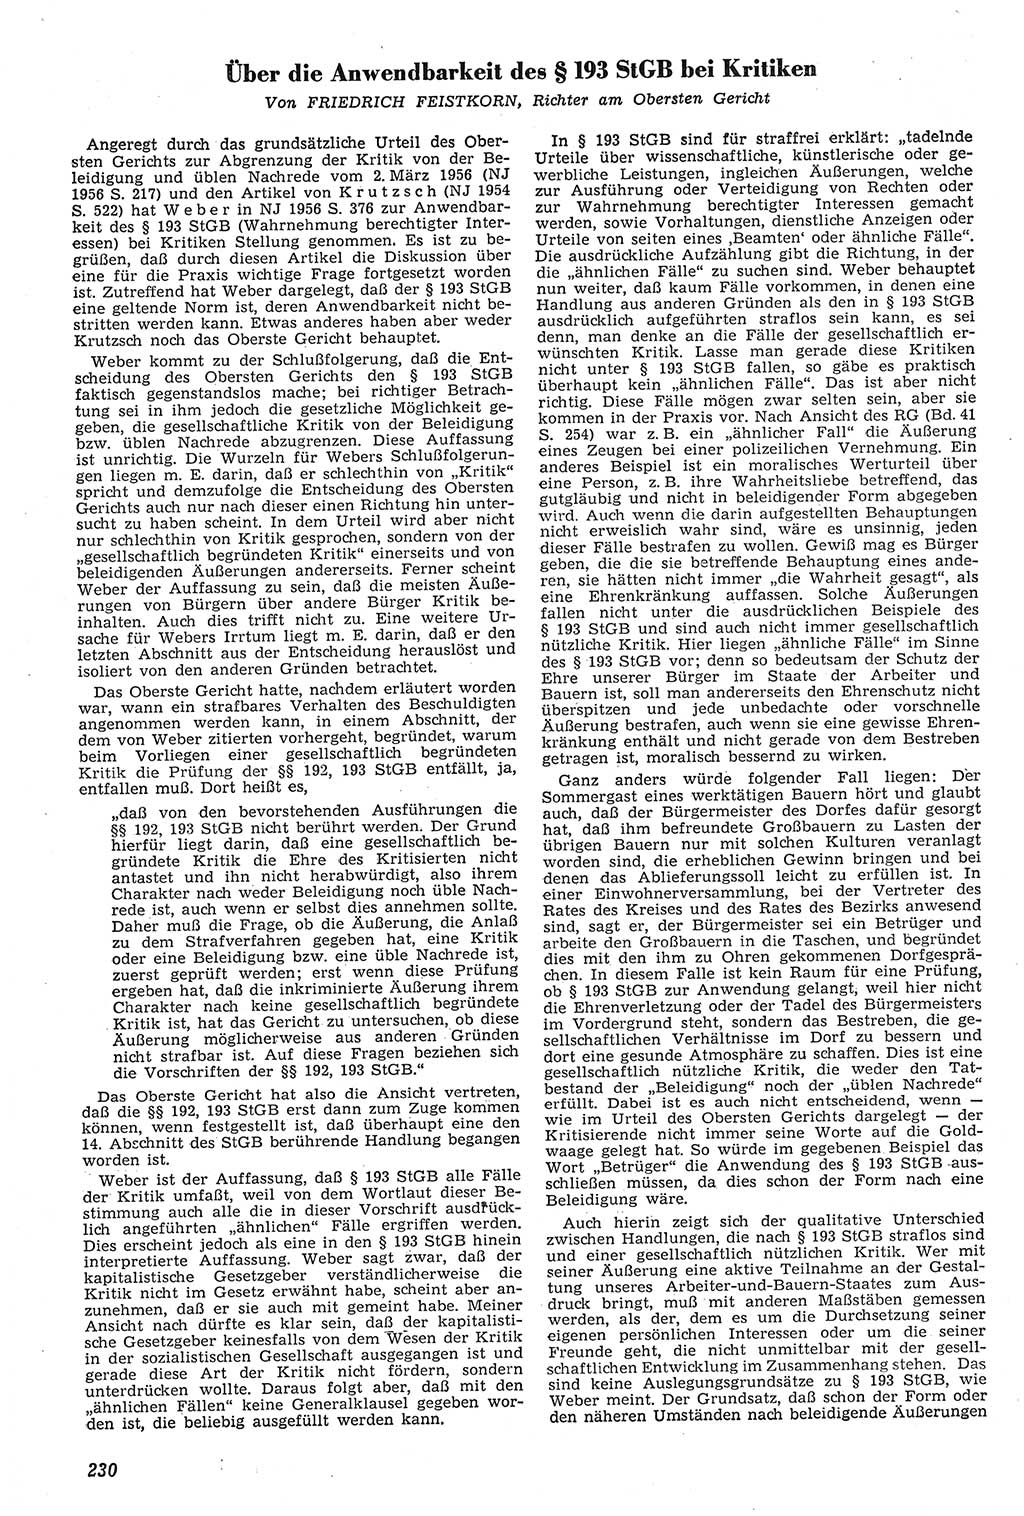 Neue Justiz (NJ), Zeitschrift für Recht und Rechtswissenschaft [Deutsche Demokratische Republik (DDR)], 11. Jahrgang 1957, Seite 230 (NJ DDR 1957, S. 230)